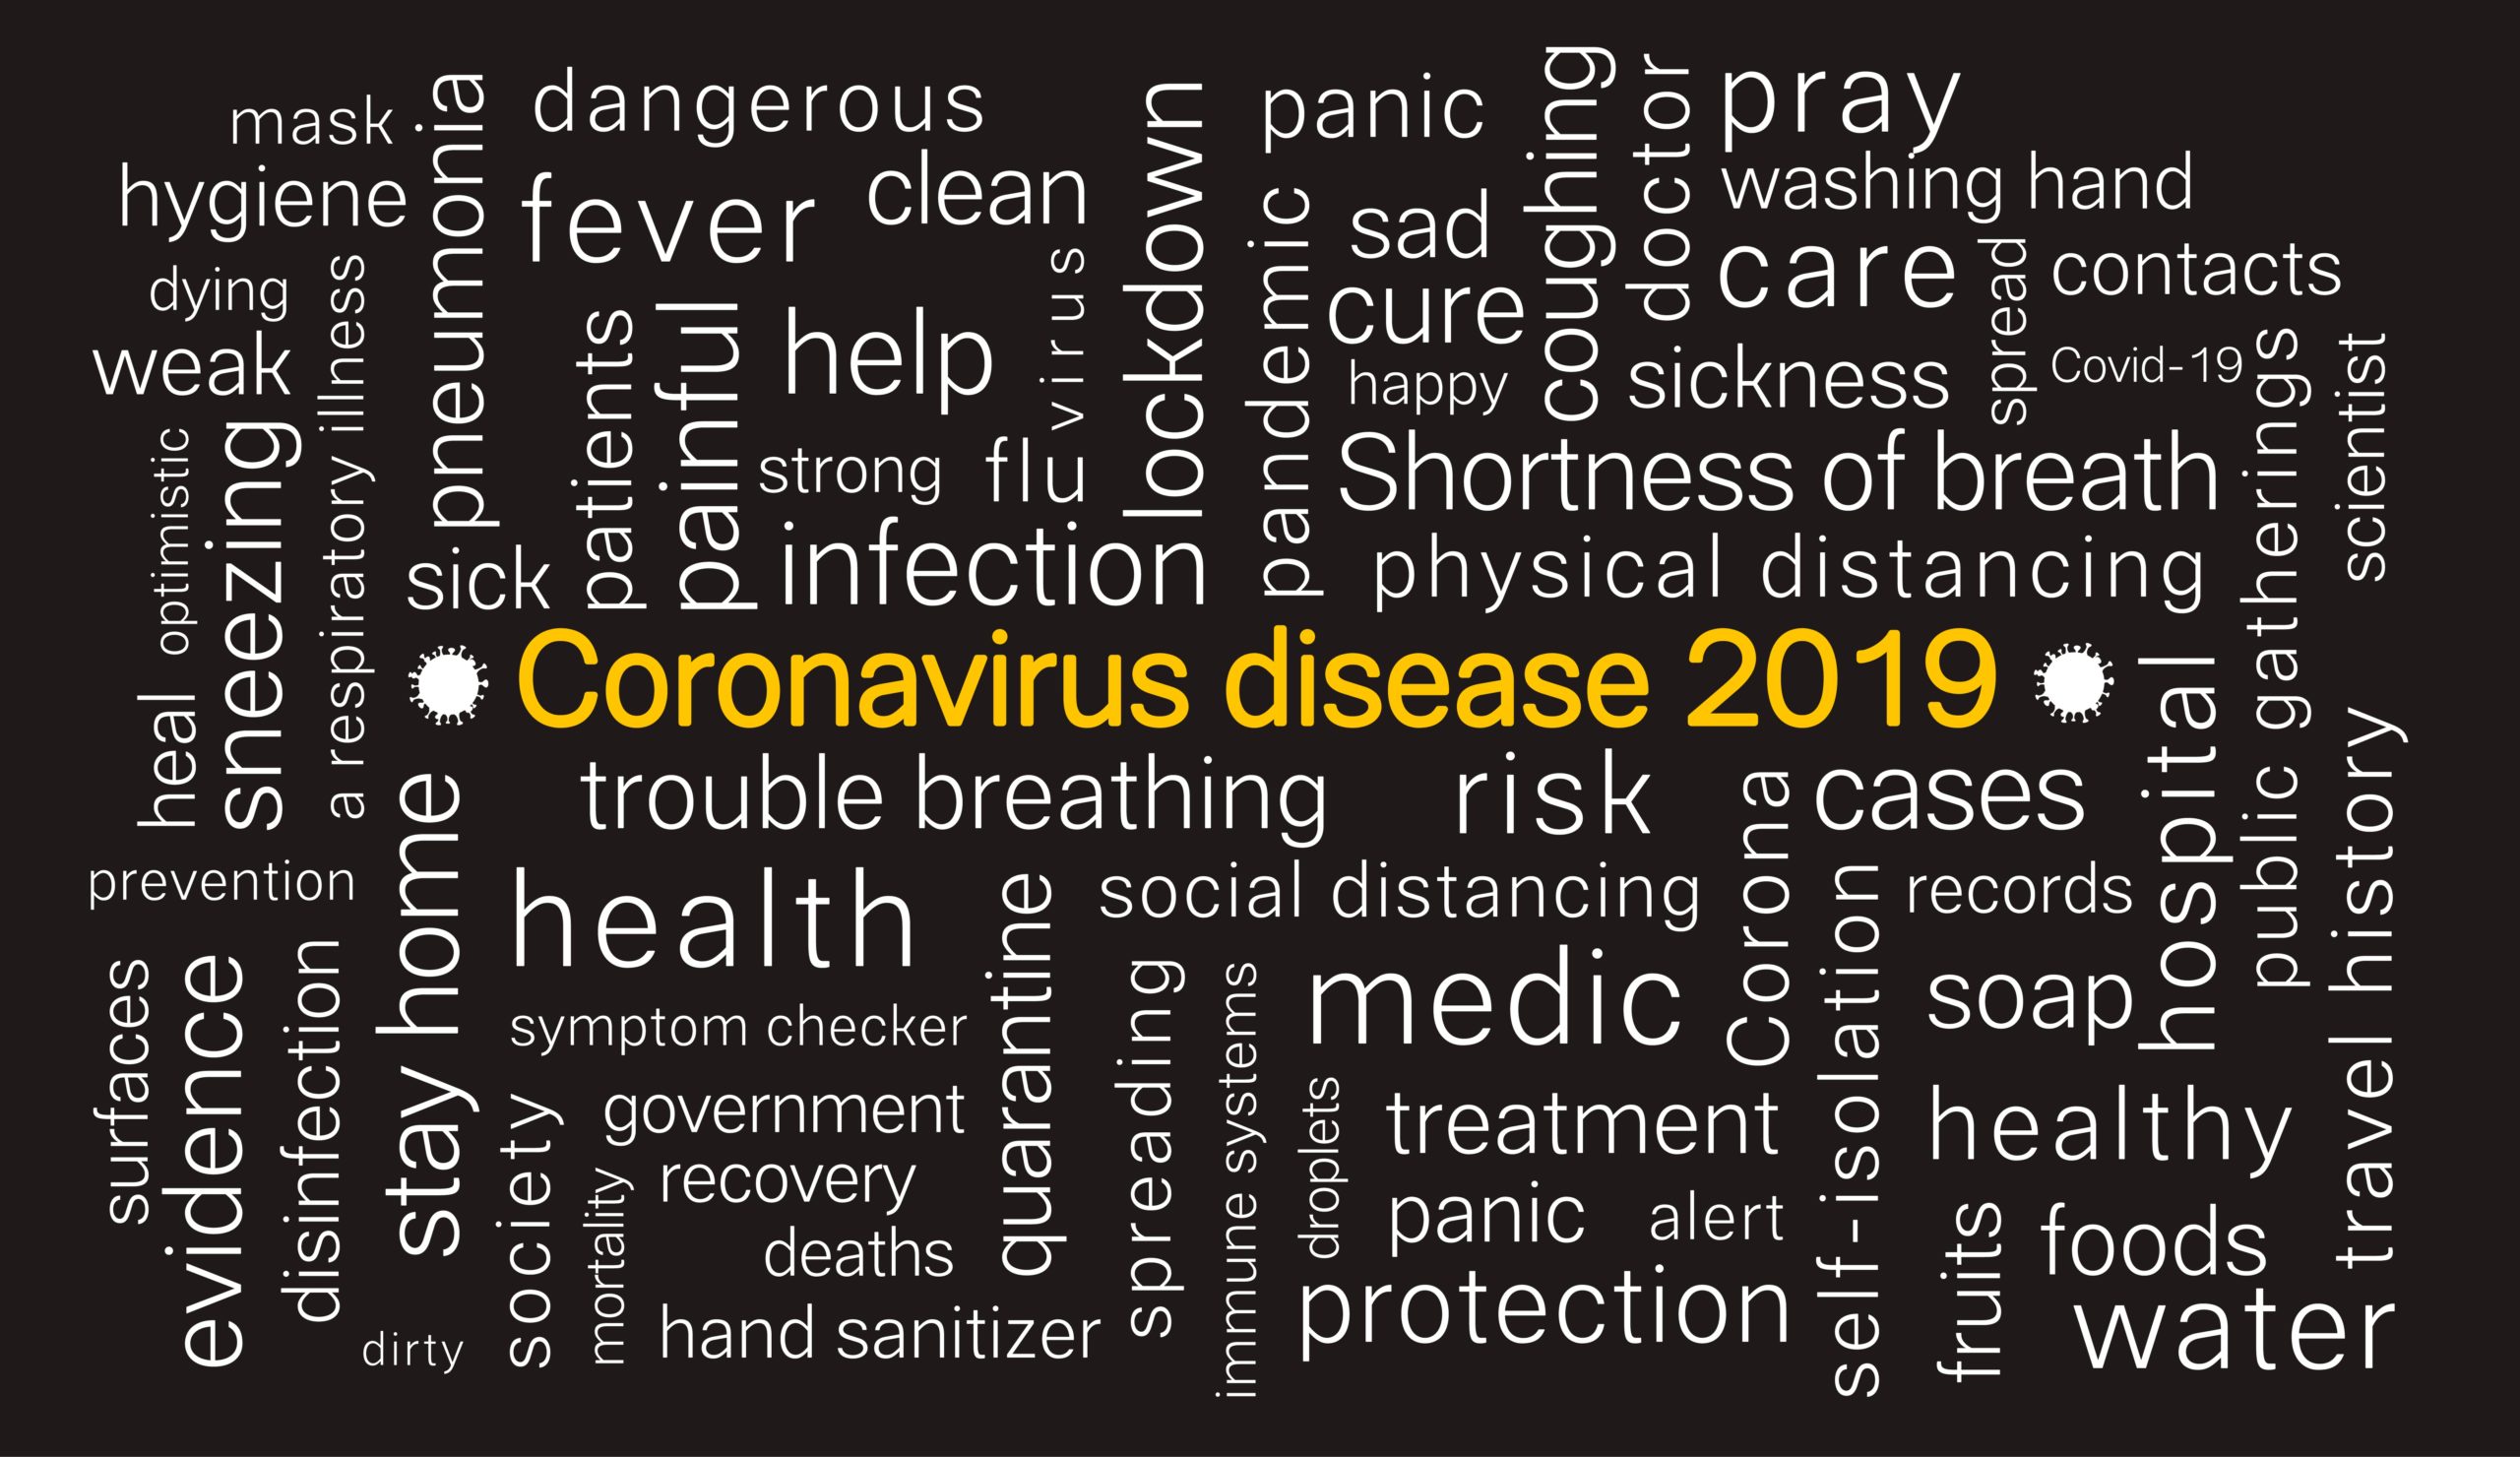 nube de palabras relacionada con el coronavirus